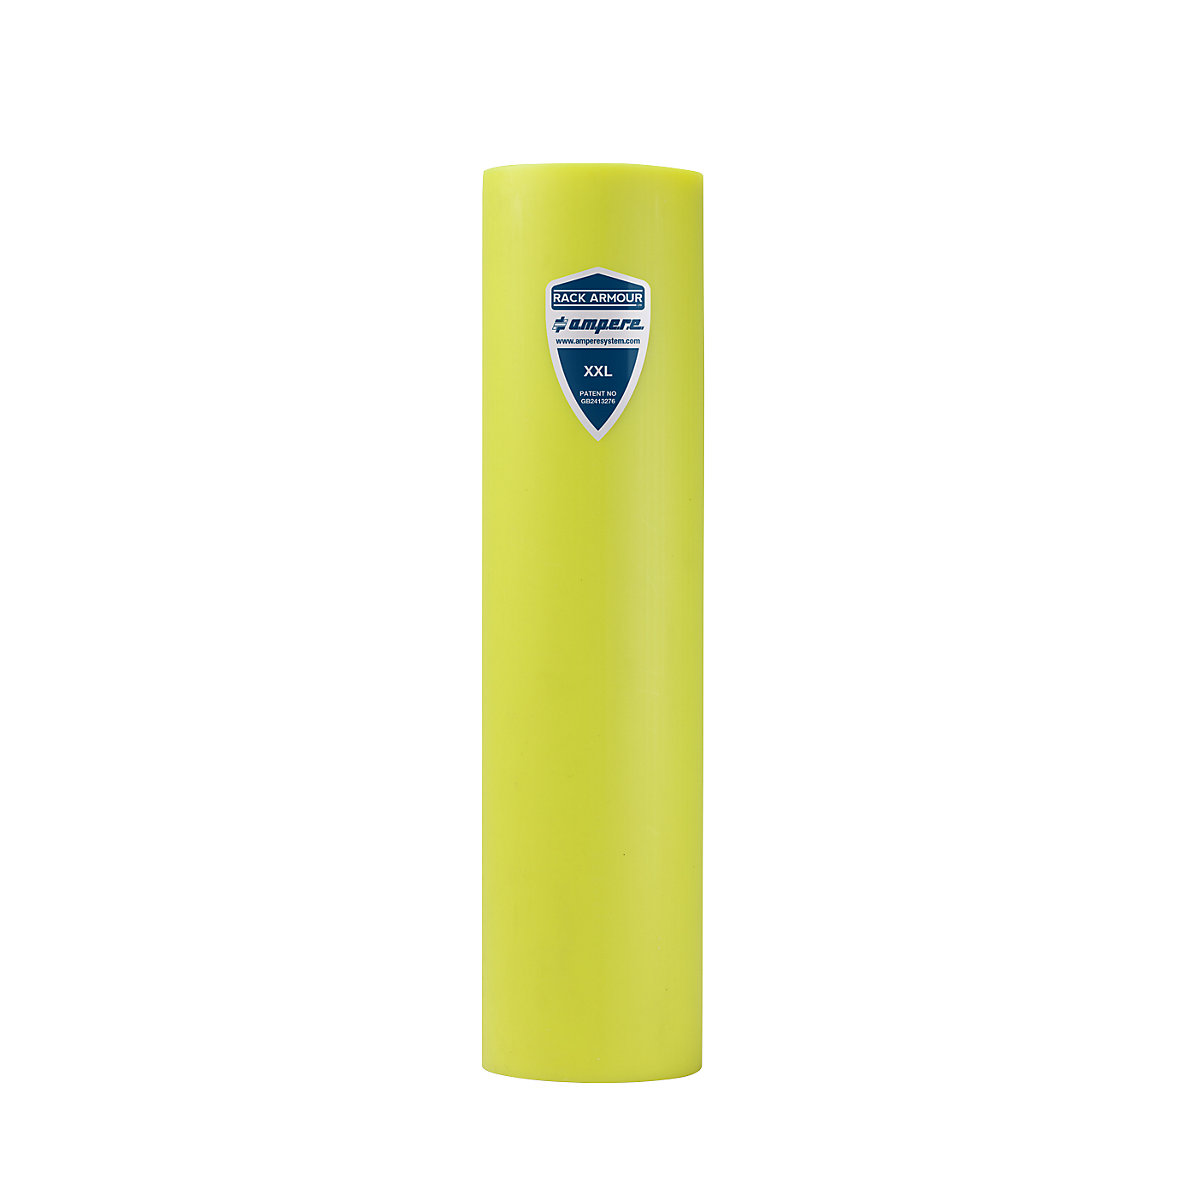 Állvány-ütközésvédő – Ampere, műanyagból, sárga színben, állványoszlop-szélesség 111 – 120 mm-14